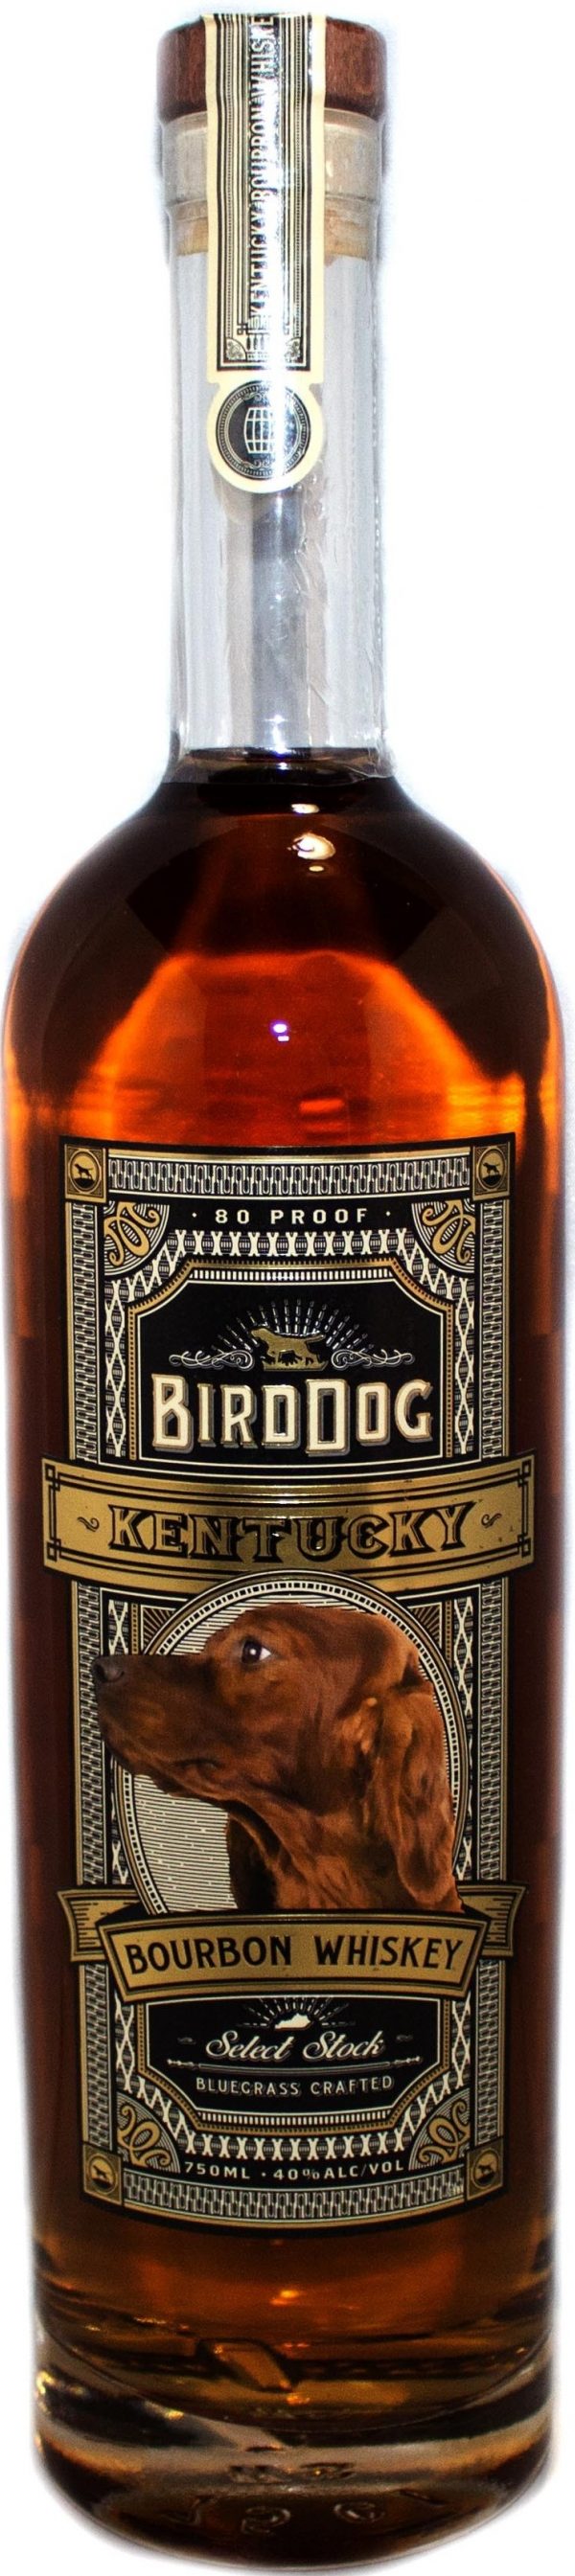 Bird Dog Blended Whiskey 6 / Case